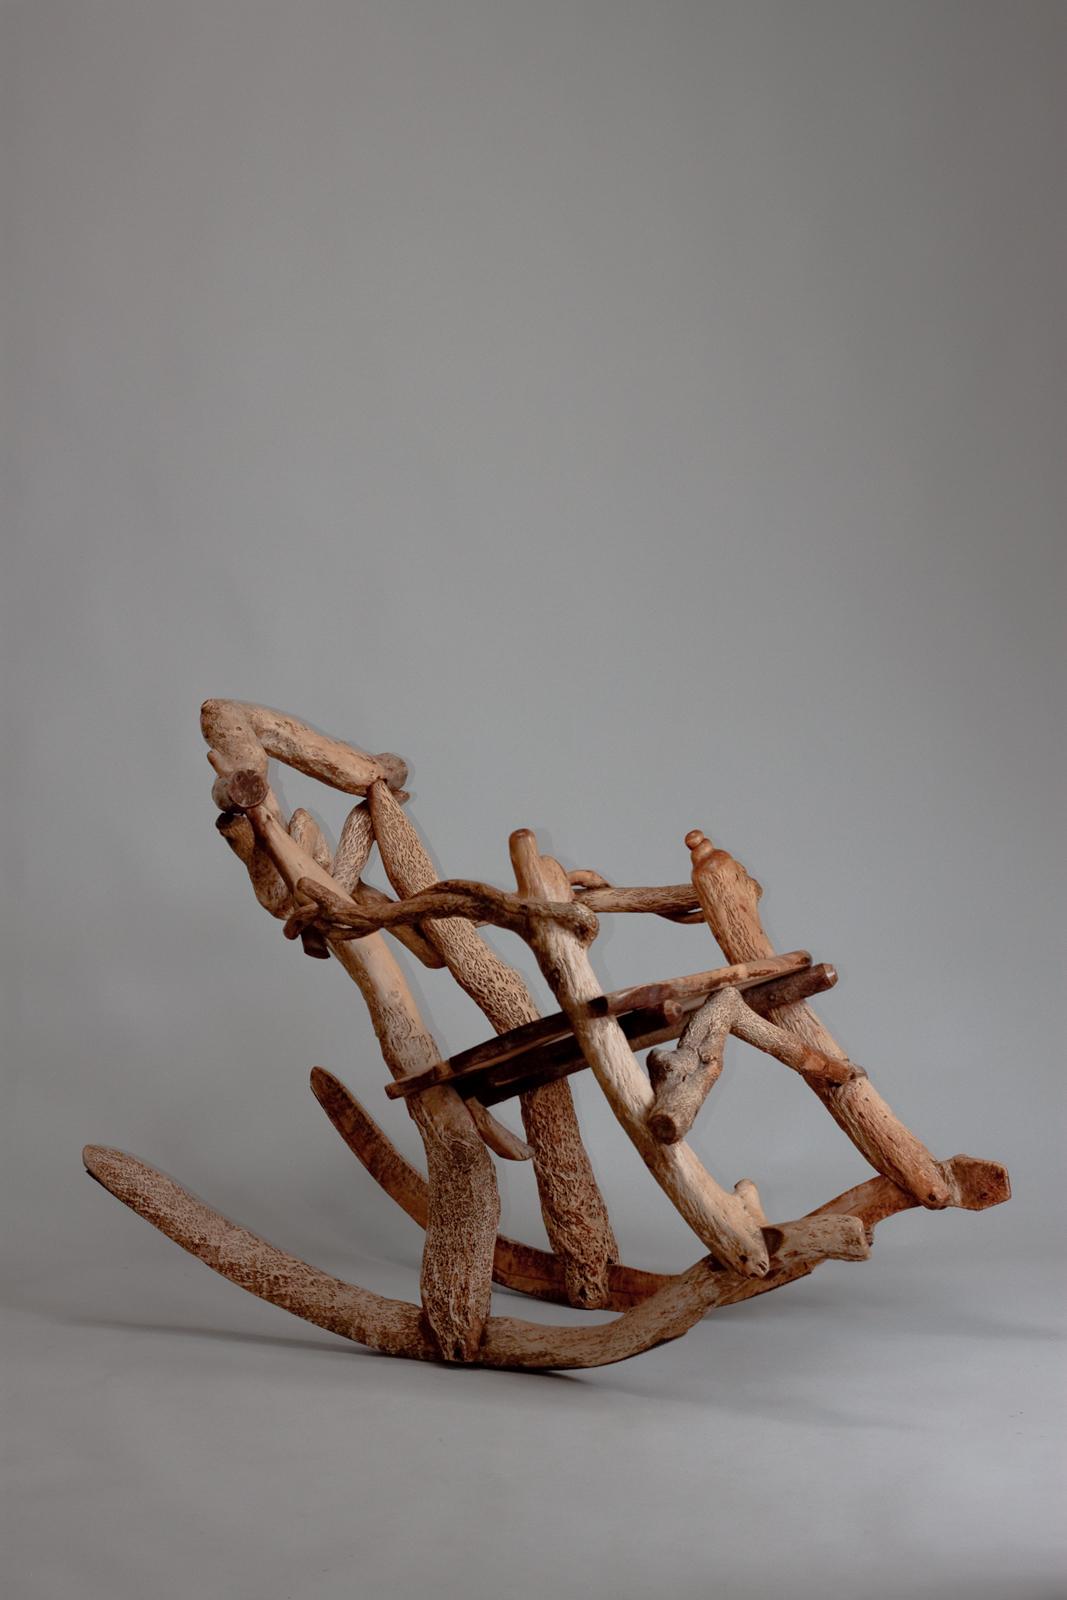 Fauteuil à bascule sculptural finlandais fabriqué à partir de racines d'arbres. Matti Savijärvi fabriquait ce type de chaises et les offrait souvent à ses amis artistes, tels que Jean Sibelius et Pekka Halonen.